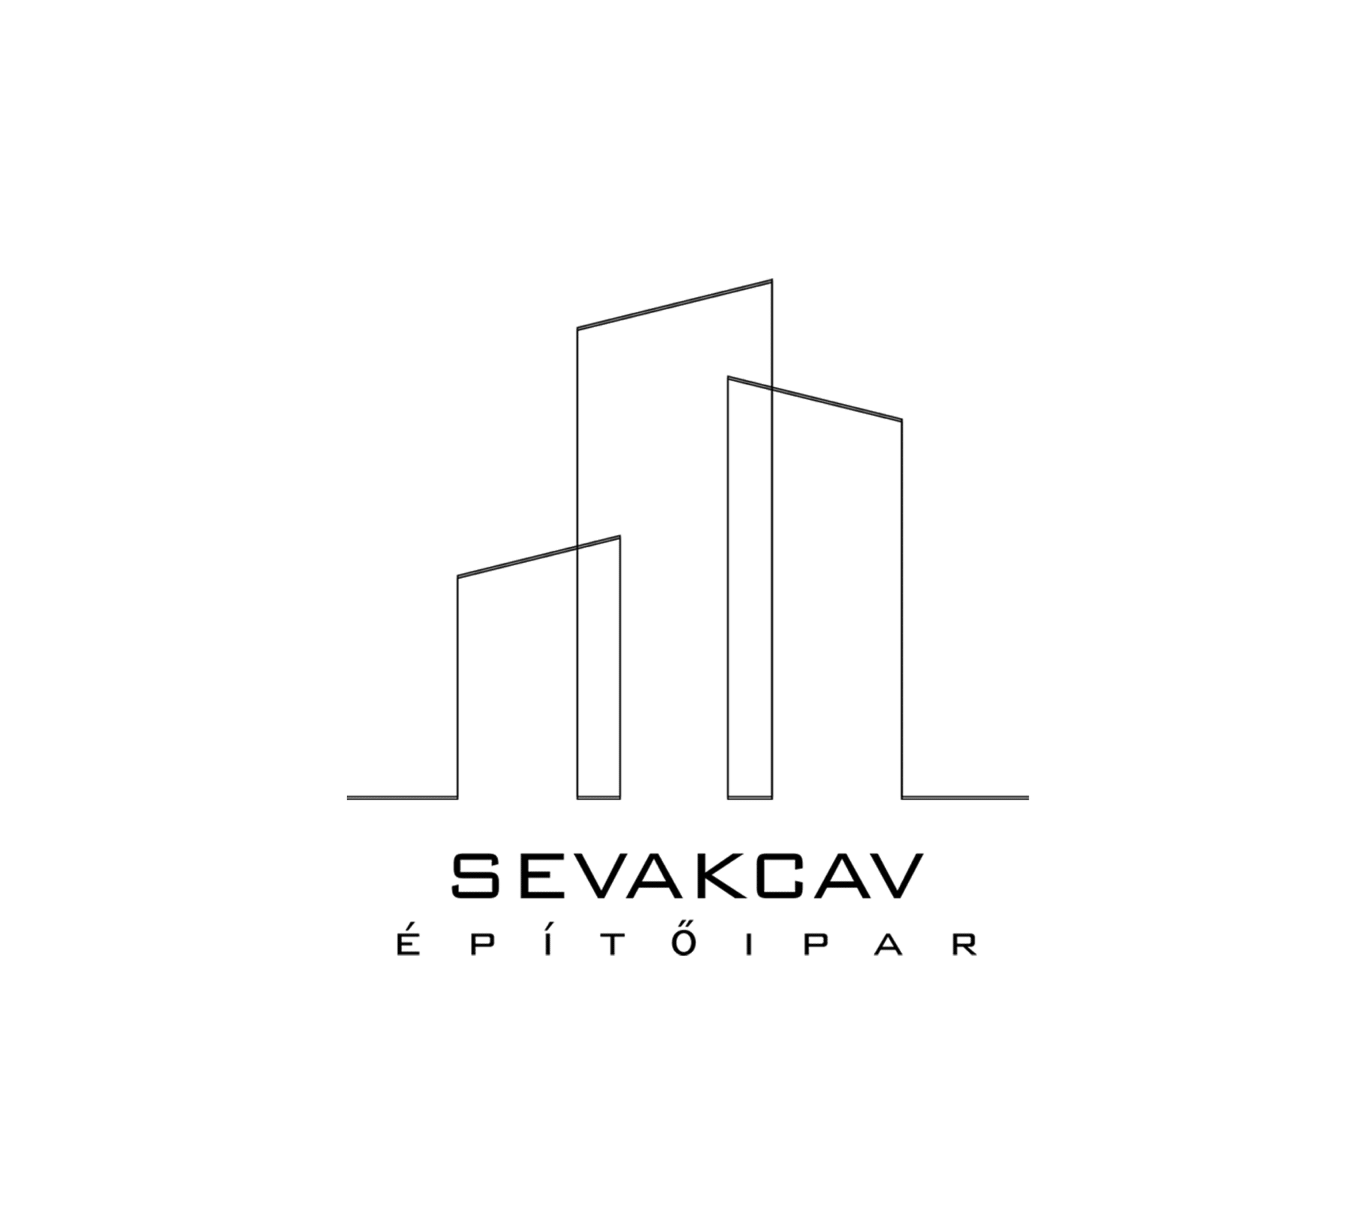 Sev-Akcav